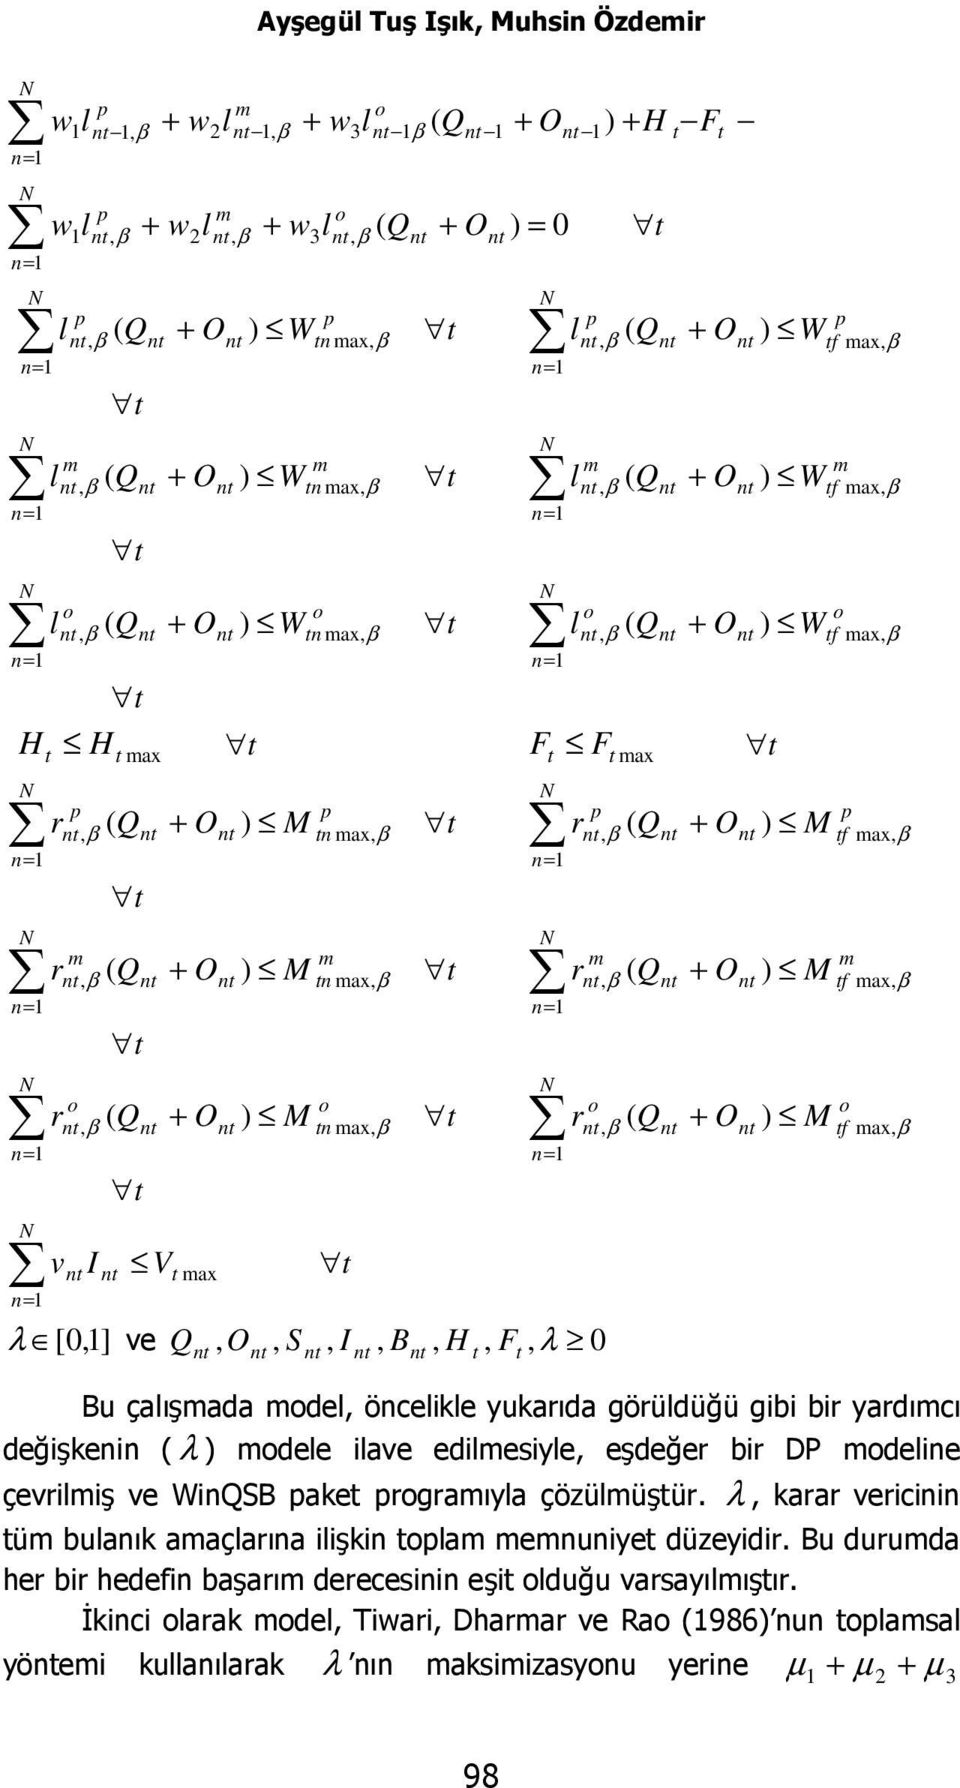 β f ax, β f ax, β f ax, β f ax, β f ax, β Bu çalışada del, öncelikle yukarıda görüldüğü gibi bir yardıcı değişkenin ( λ dele ilave edilesiyle, eşdeğer bir DP deline çevriliş ve WinQSB ake rgraıyla